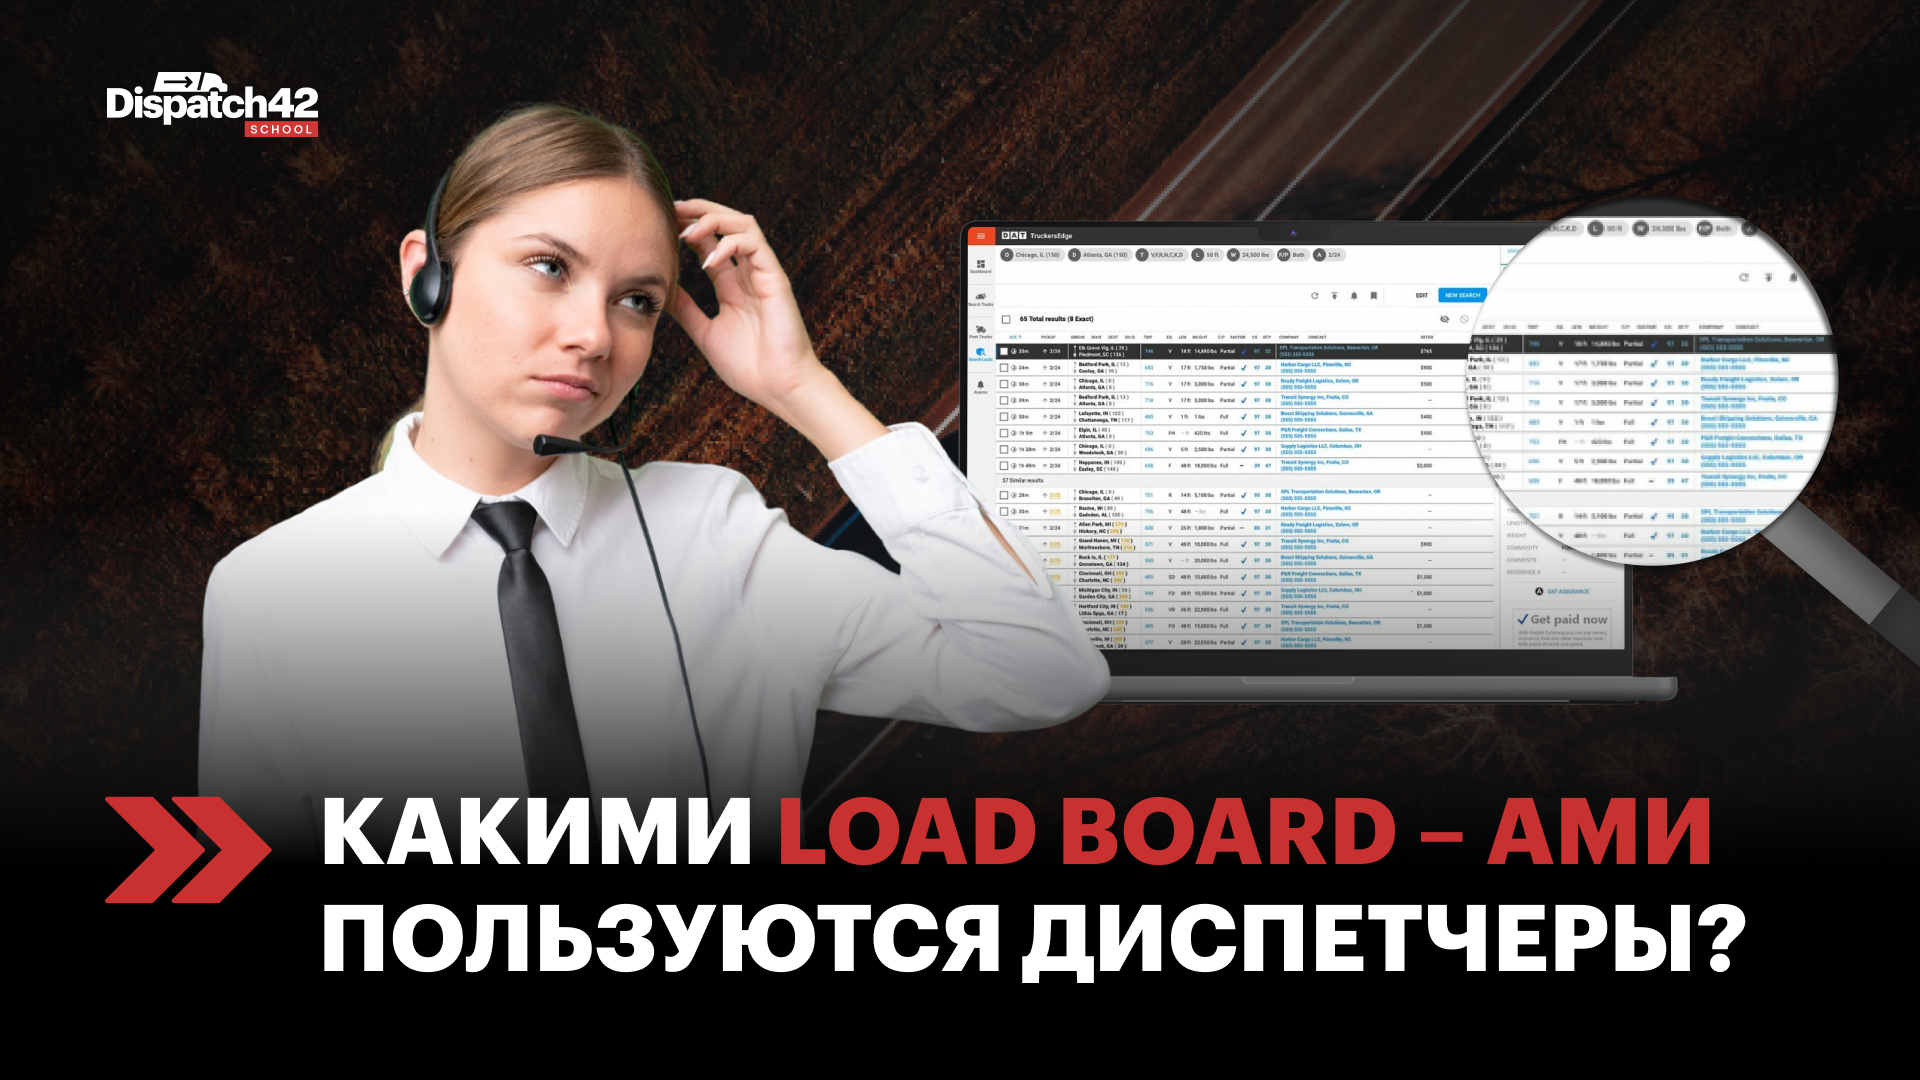 Какими Load board–ами пользуются диспетчеры?